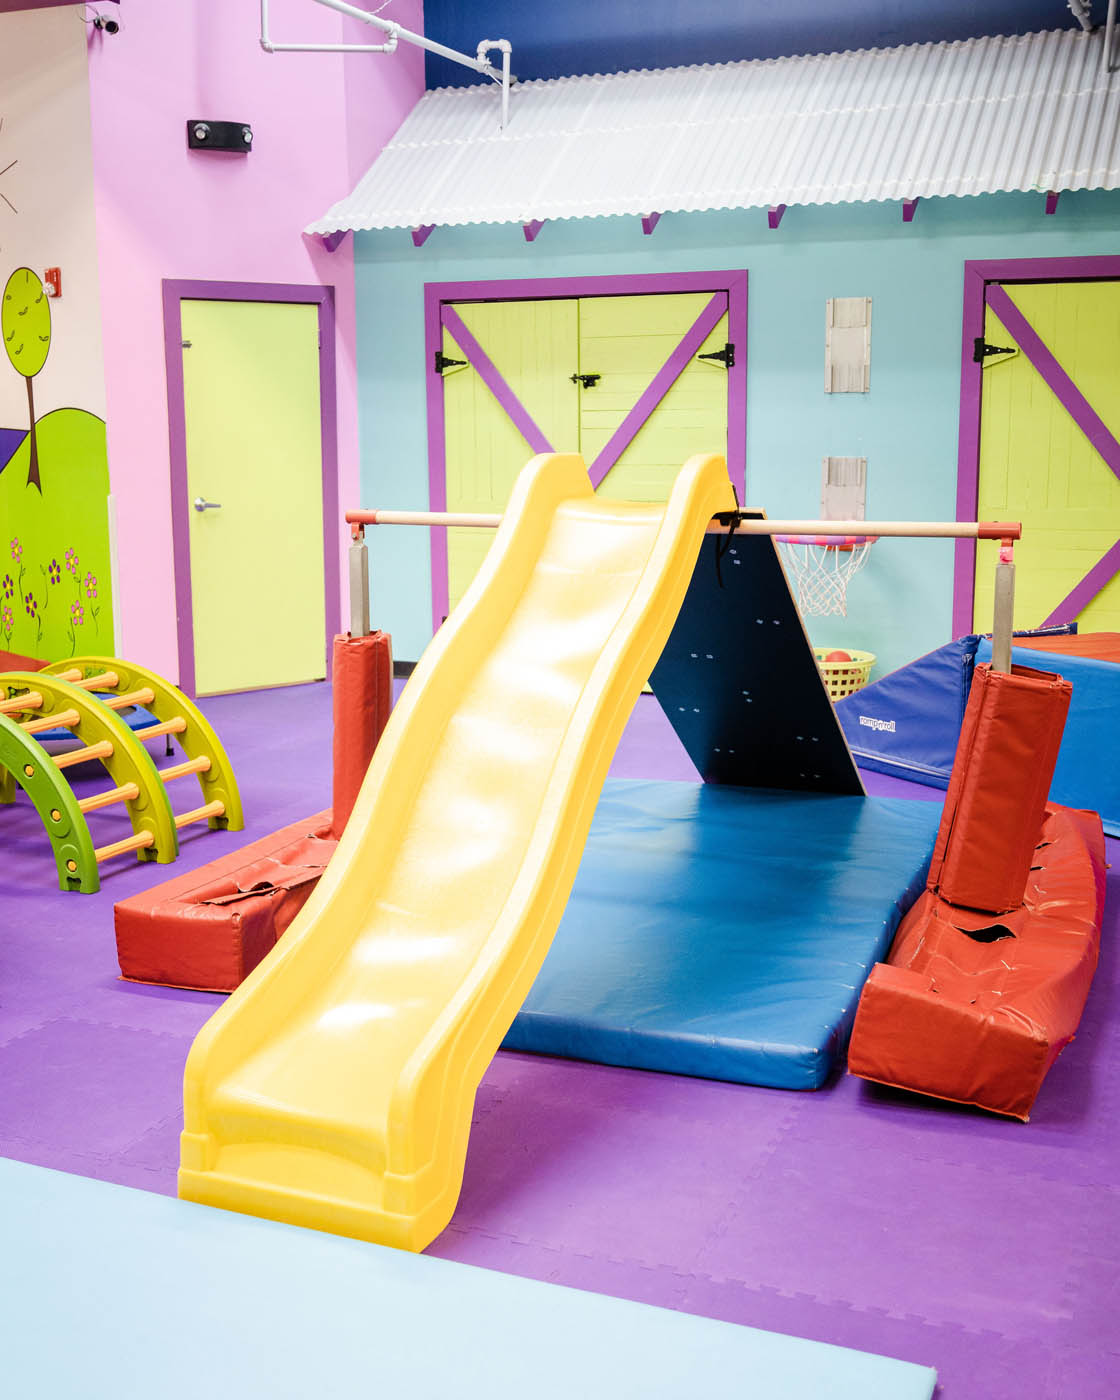 A Romp n' Roll St. Petersburg slide, indoor playgrounds in St. Petersburg, FL.